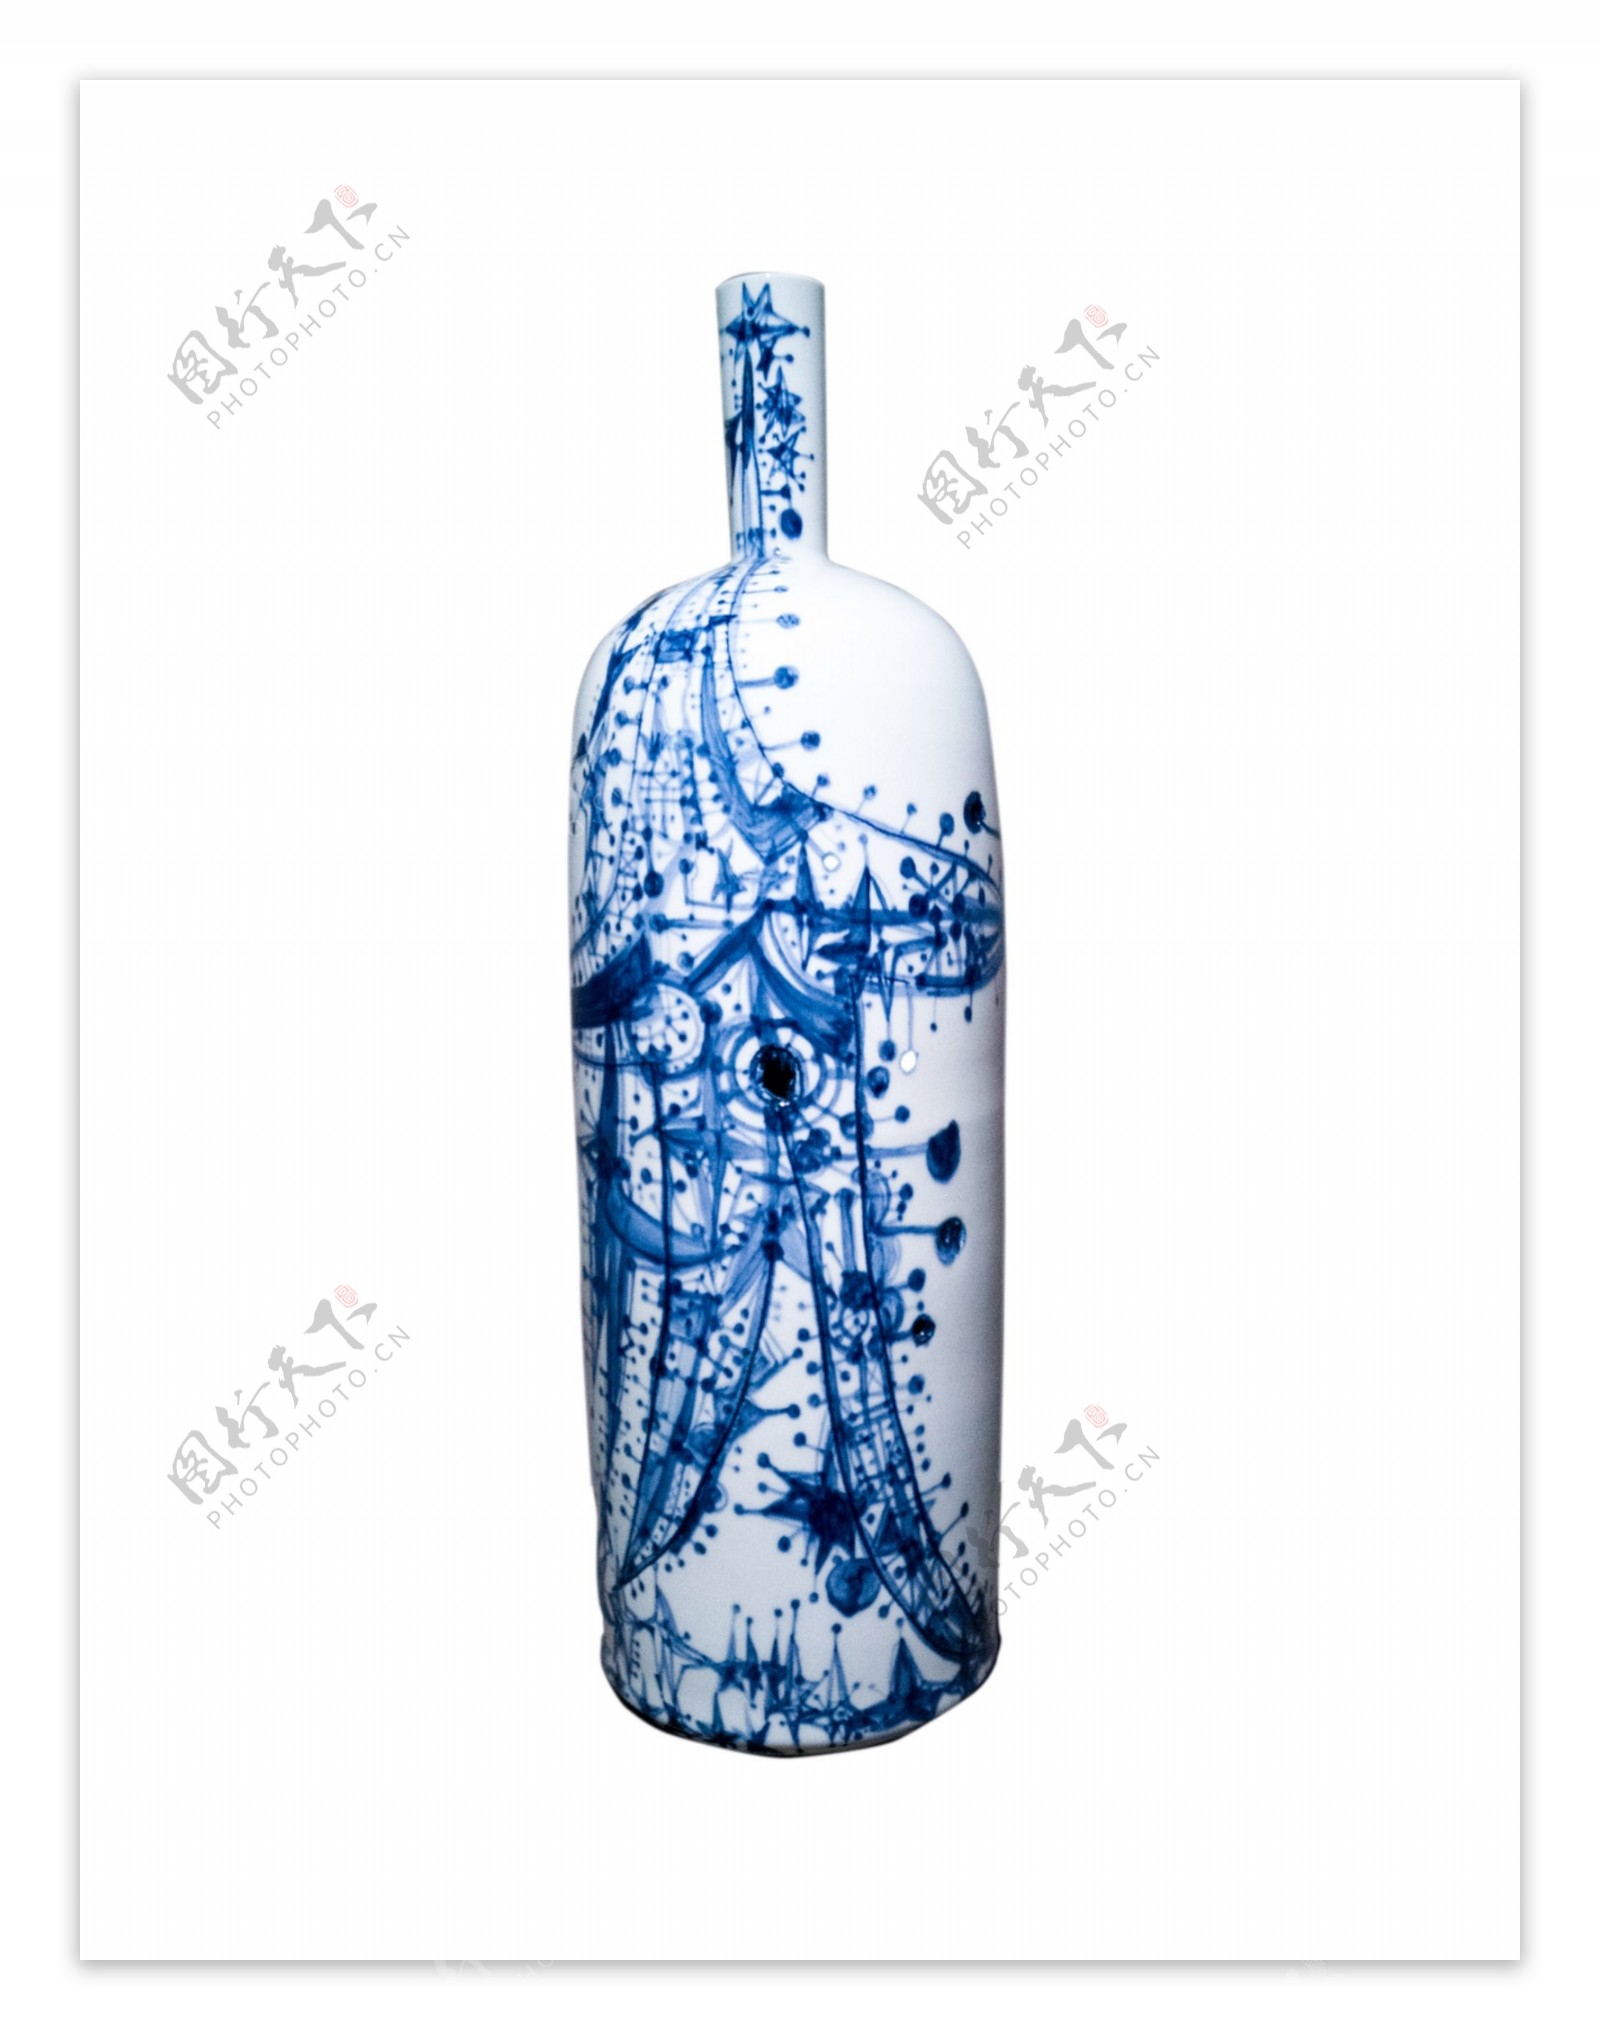 青花瓷中国风陶瓷瓶png素材